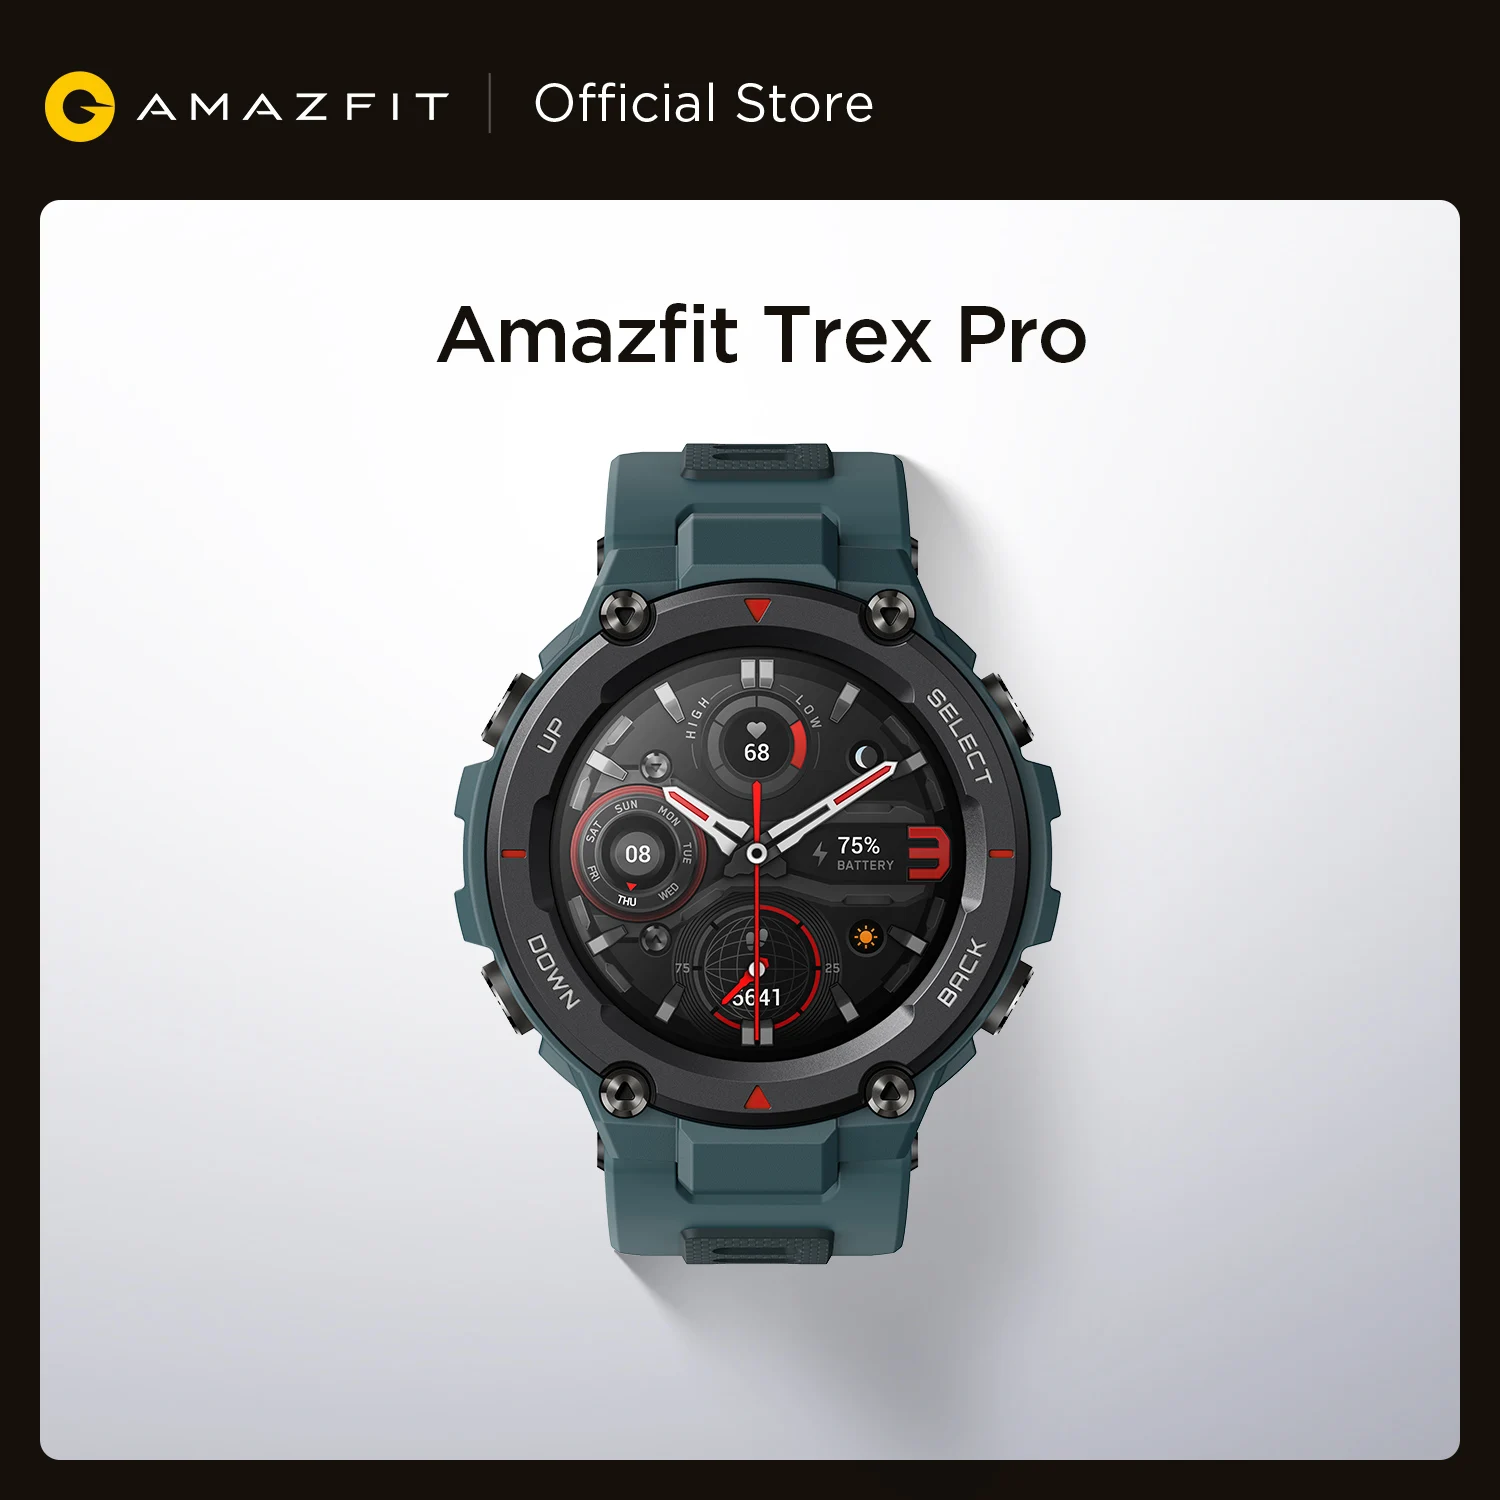 Reloj inteligente Amazfit T-Rex Pro para hombre, robusto, con GPS para  exteriores, 15 certificados por estándares militares, más de 100 modos  deportivos, resistente al agua a 10 ATM, duración de la batería